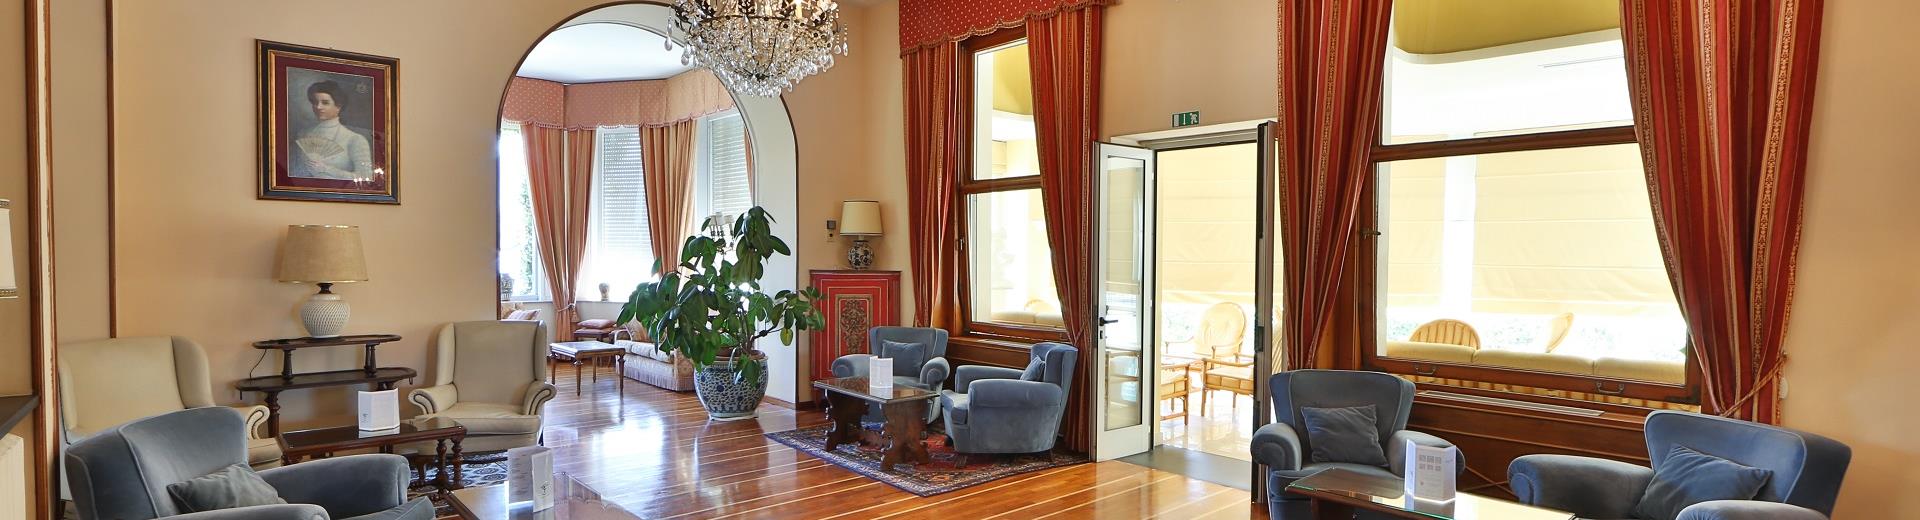 Scegli il nostro hotel 4 stelle a Santa Margherita Ligure